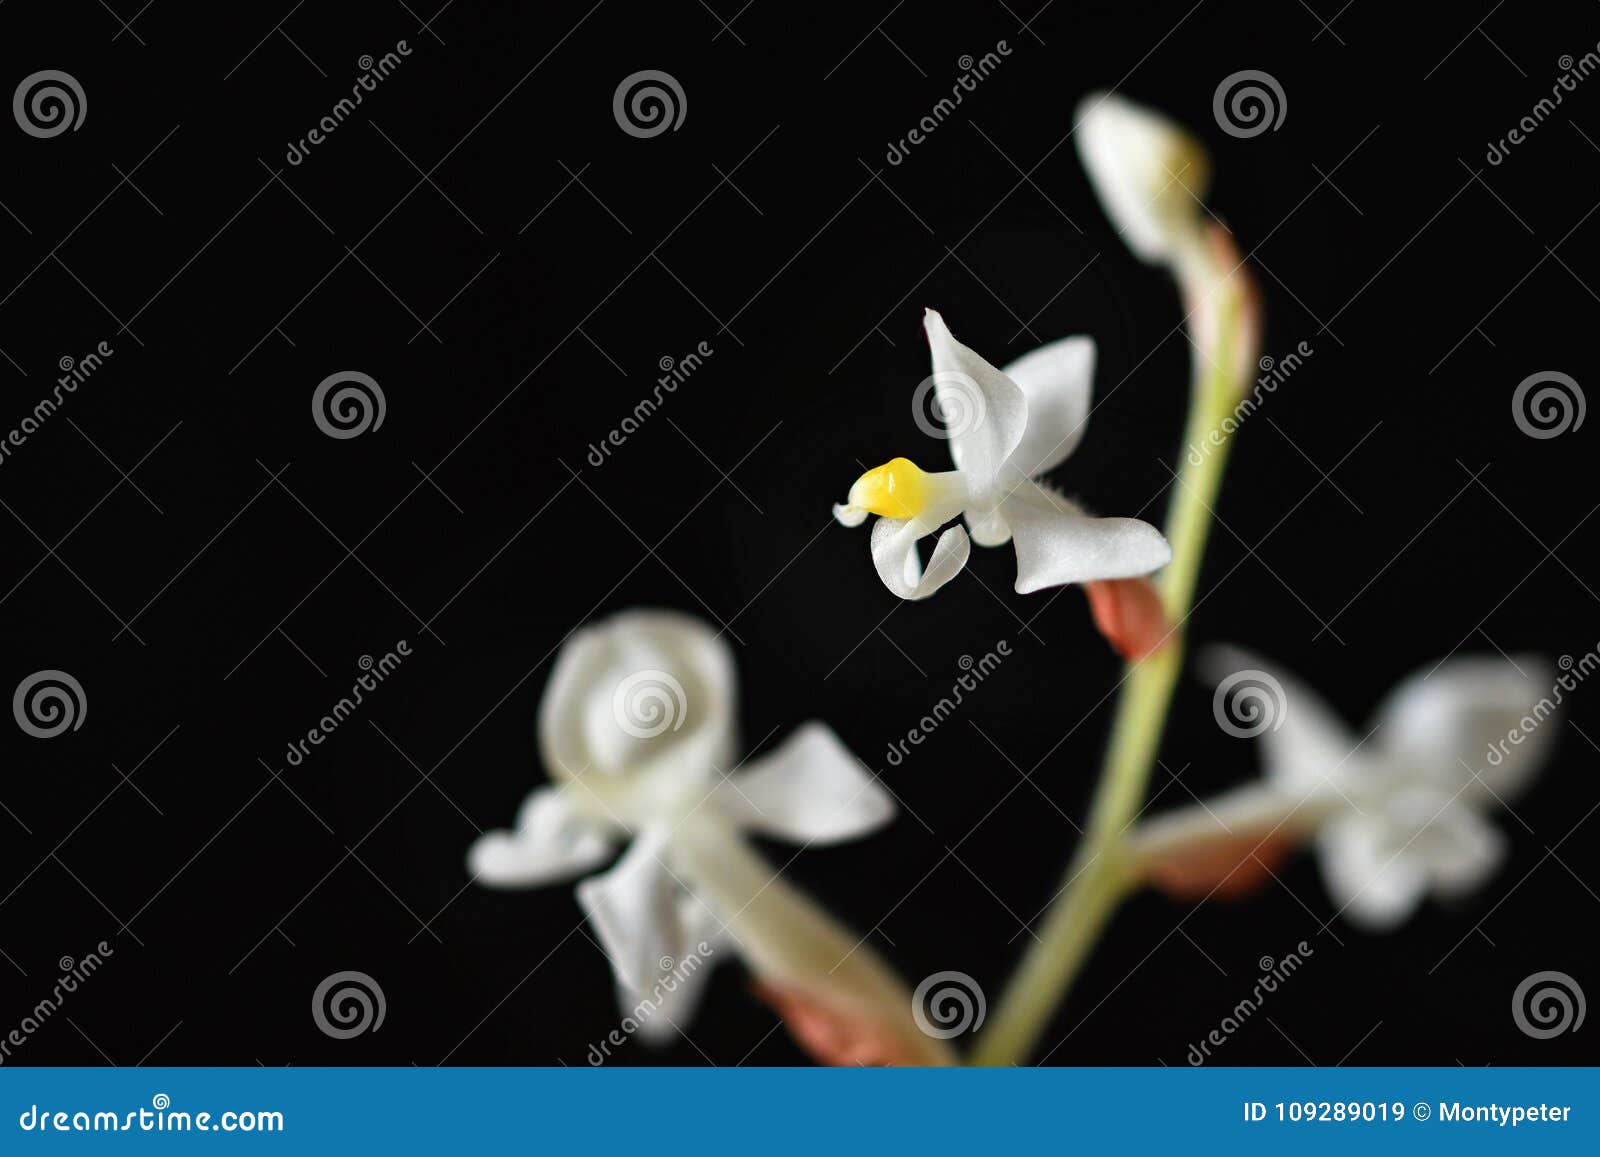 Ludisia Decolora La Flor Blanca Floreciente Hermosa De La Orquídea De Joya  a En Un Fondo Negro Limpio Imagen de archivo - Imagen de asia, flor:  109289019